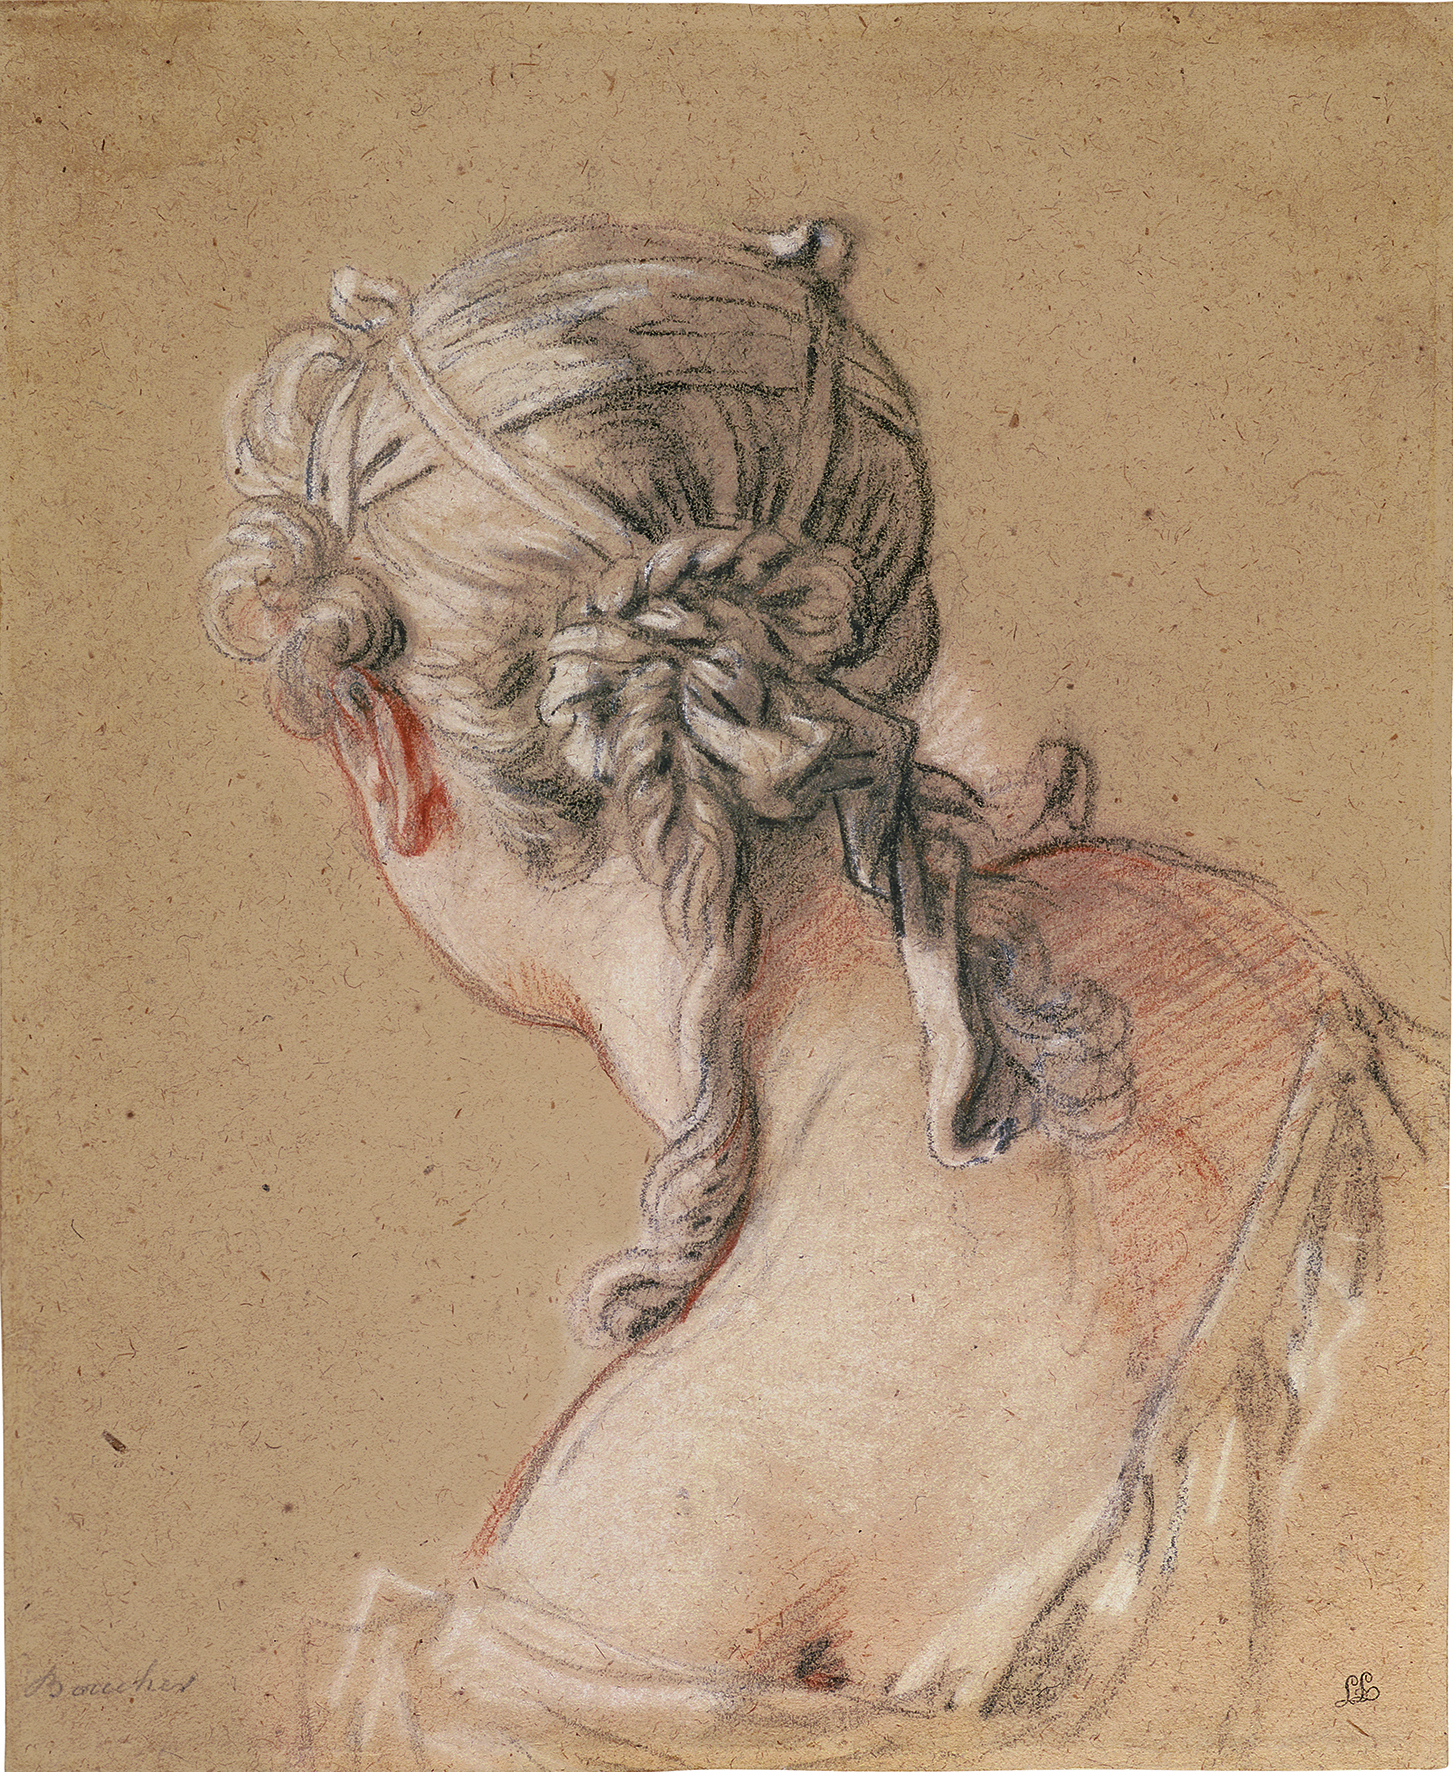 Abbildung von Bouchers Werk Kniende junge Frau mit Kind. Es zeigt einen Ausschnitt des Werkes. Man sieht den Rücken einer jungen Frau.